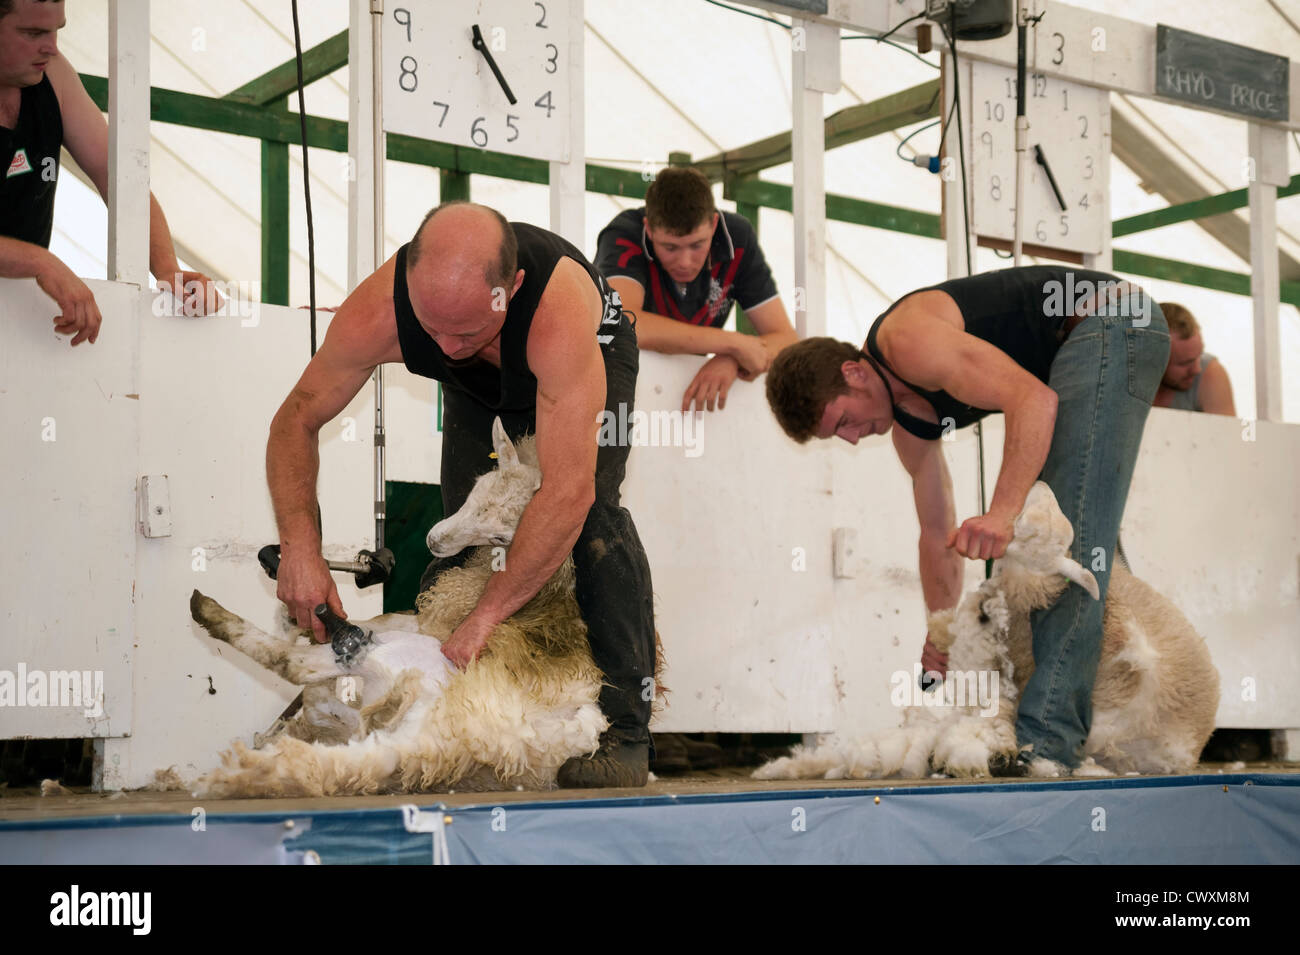 Schafschur Wettbewerb bei Kington Show, Herefordshire, England. Erster Mensch, 10 Siege der Schafe zu scheren. Stockfoto